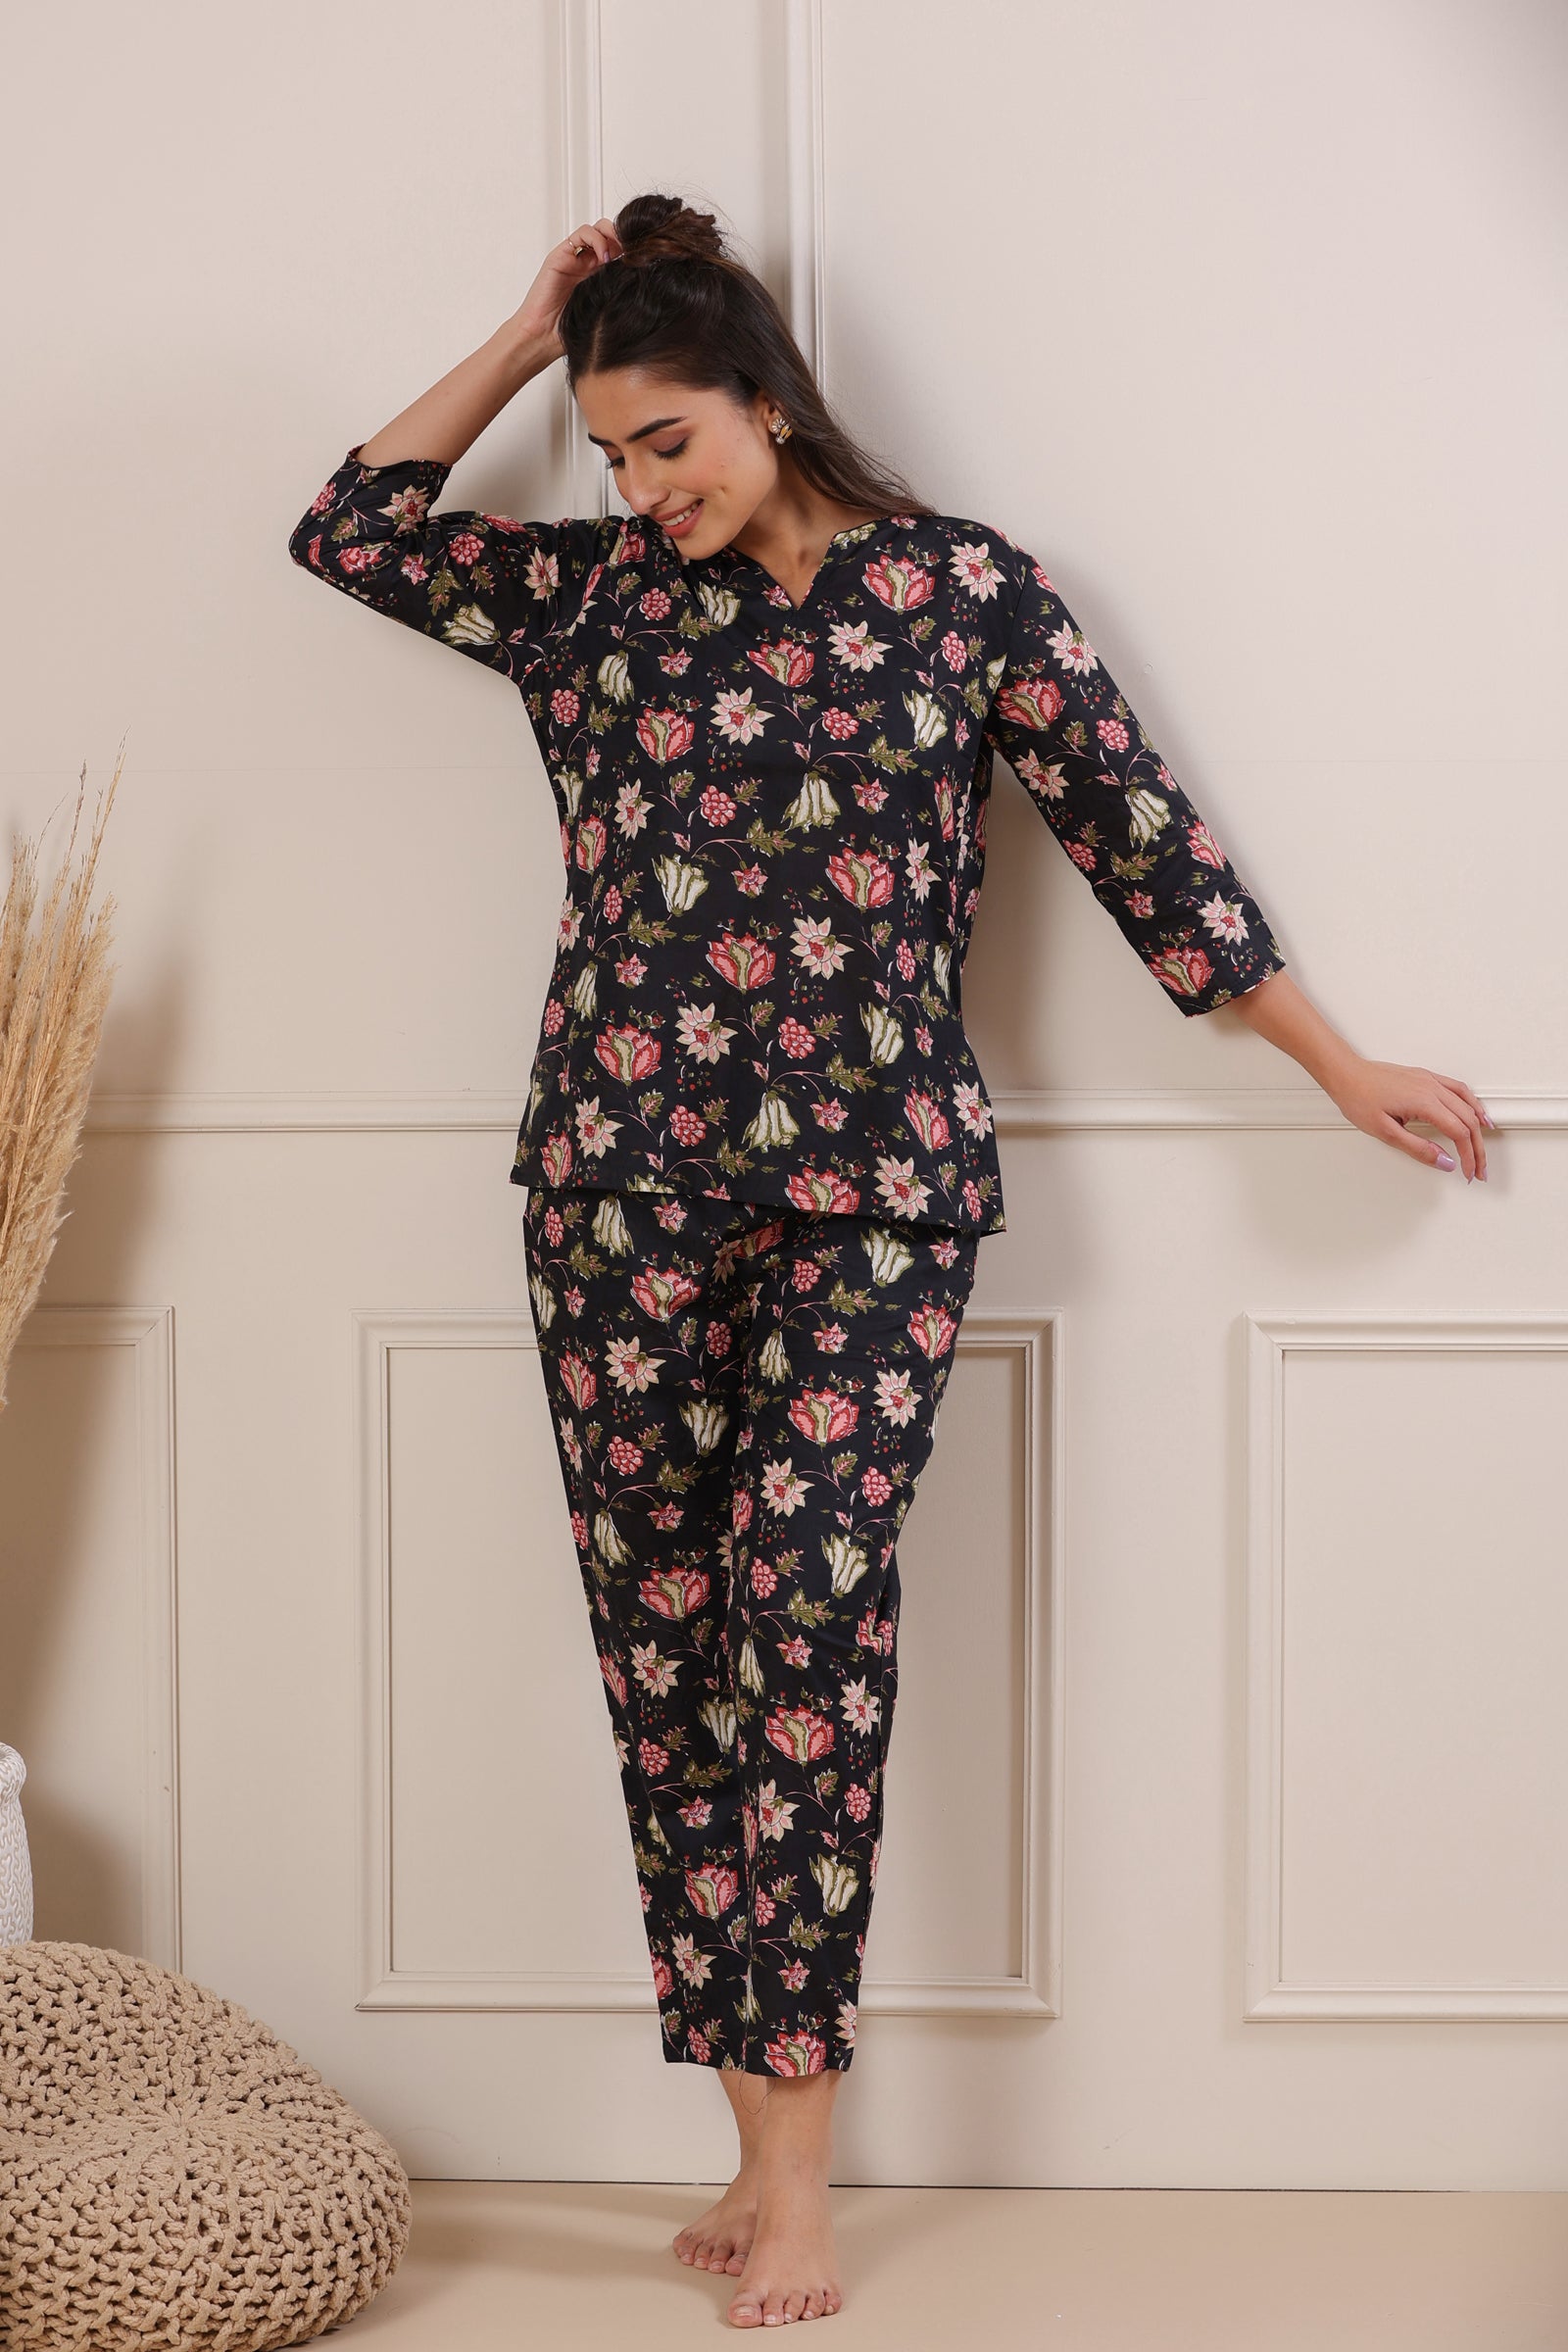 Nidra Garden Black Cotton Pyjama Night Suit Set - shahenazindia